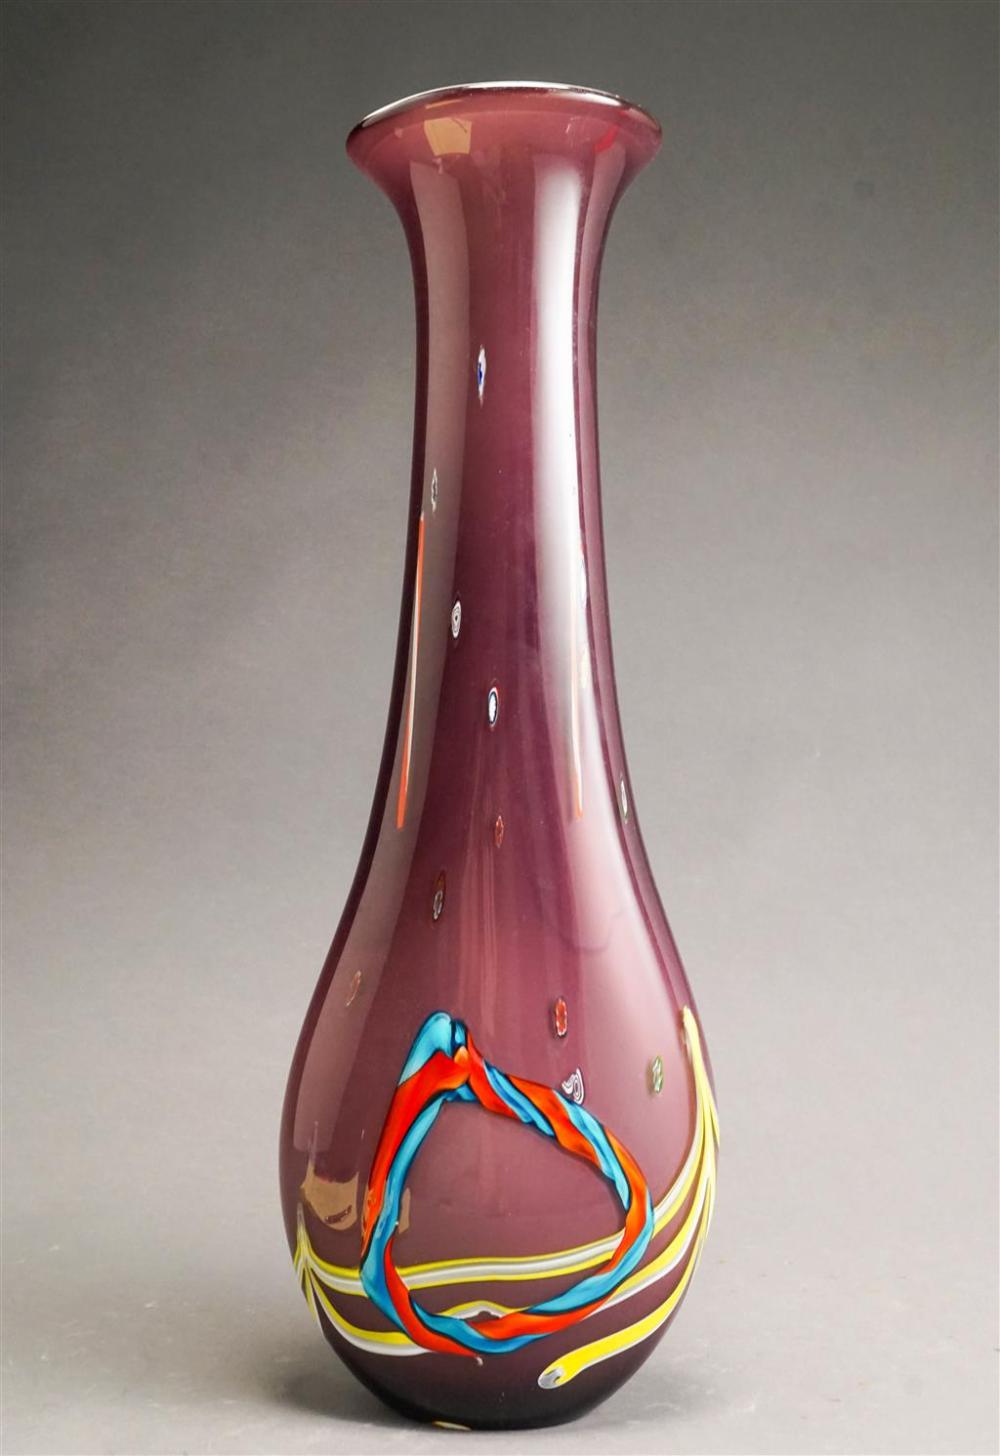 MURANO TYPE ART GLASS VASE, HEIGHT: